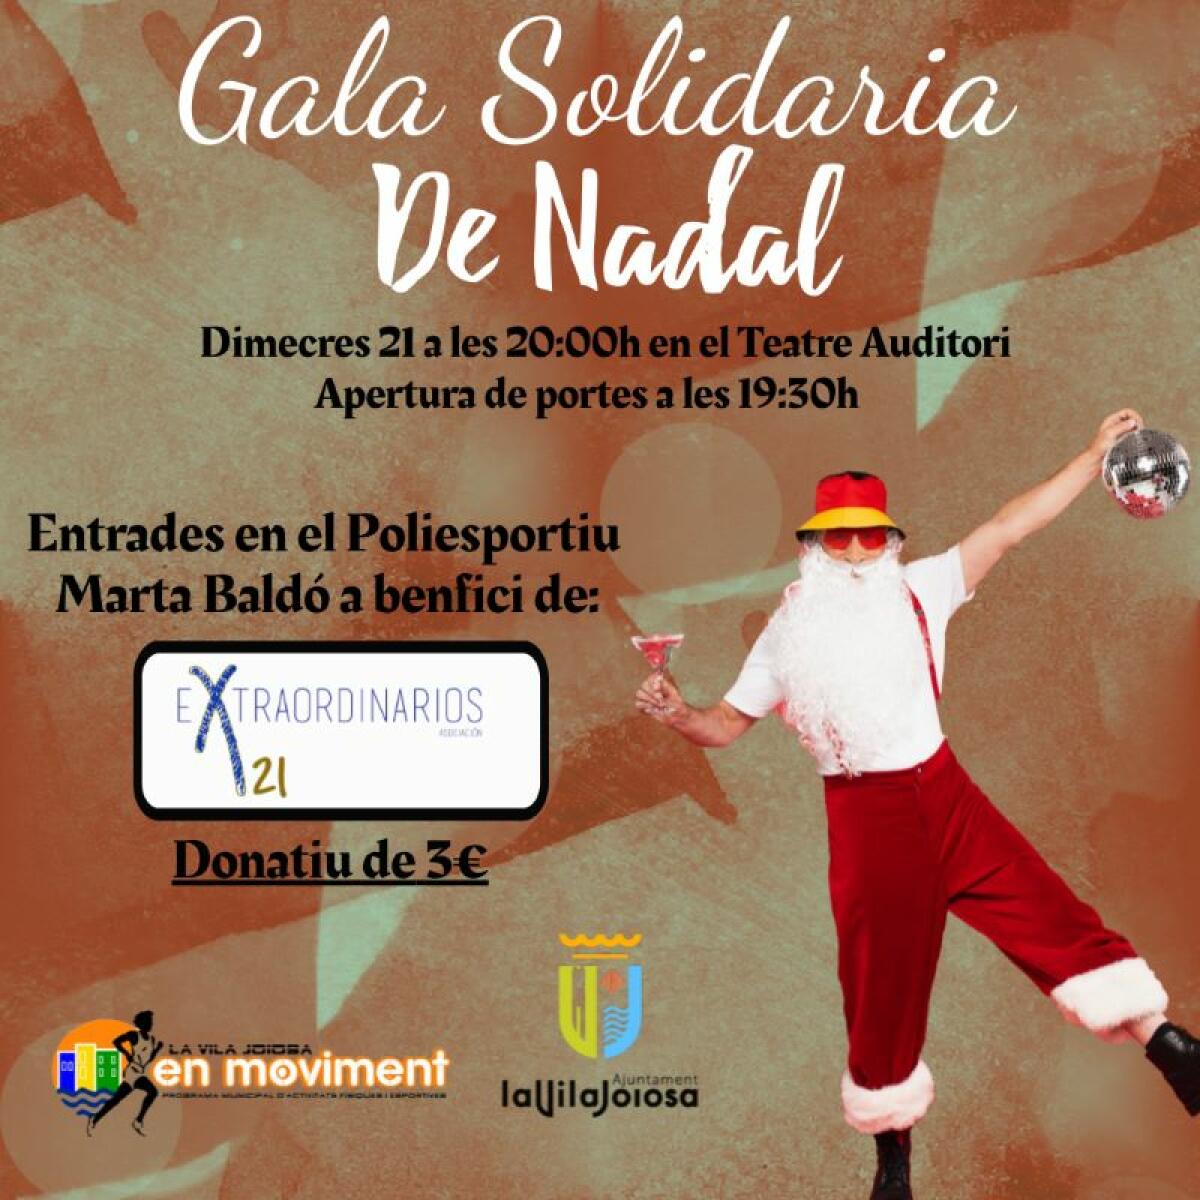 La Concejalía de Deportes de la Vila Joiosa organiza una nueva edición de la Gala Solidaria de Navidad